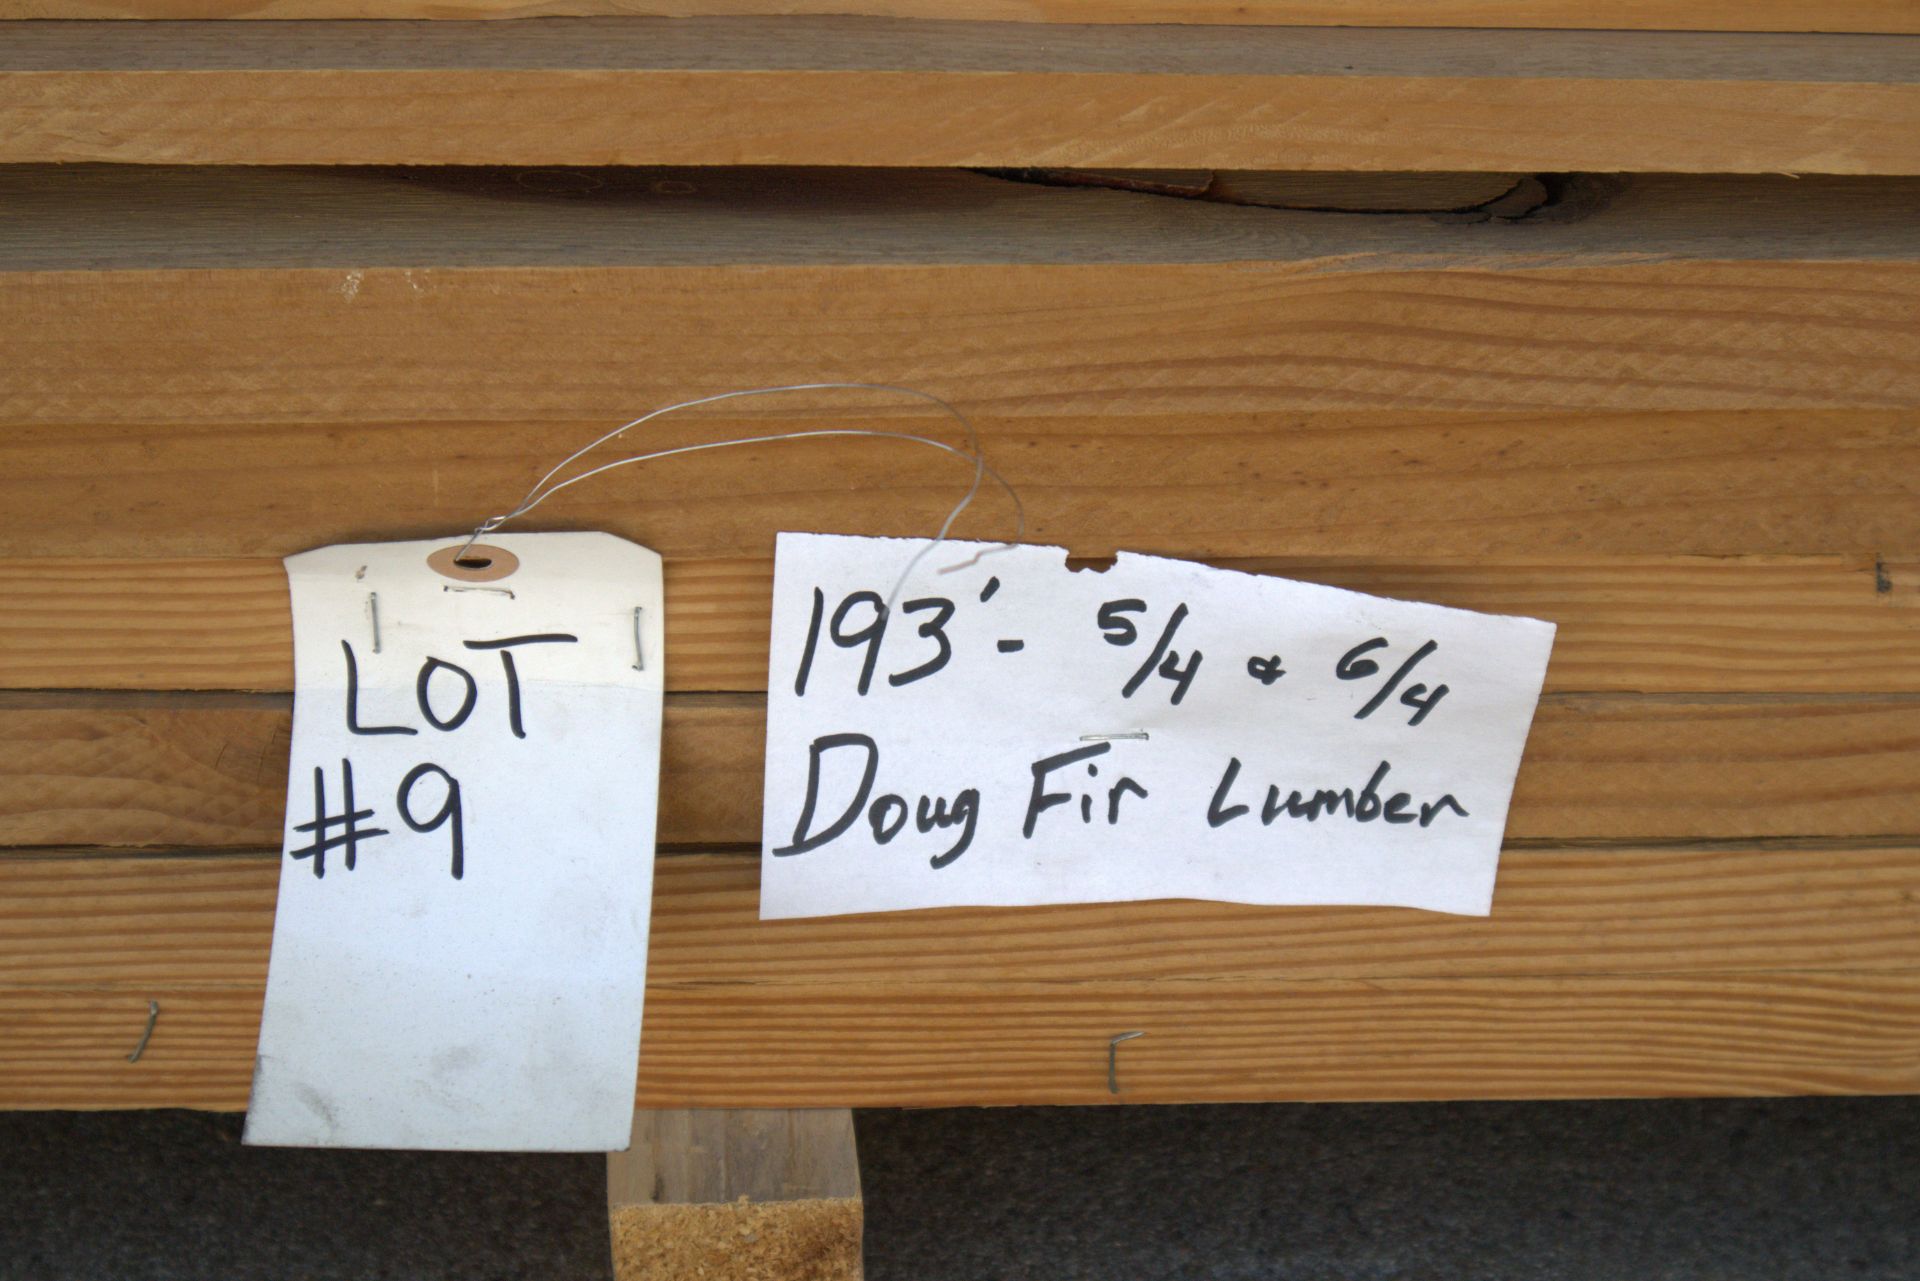 193' 5/4 & 6/4 Doug Fir Lumber - Image 4 of 4